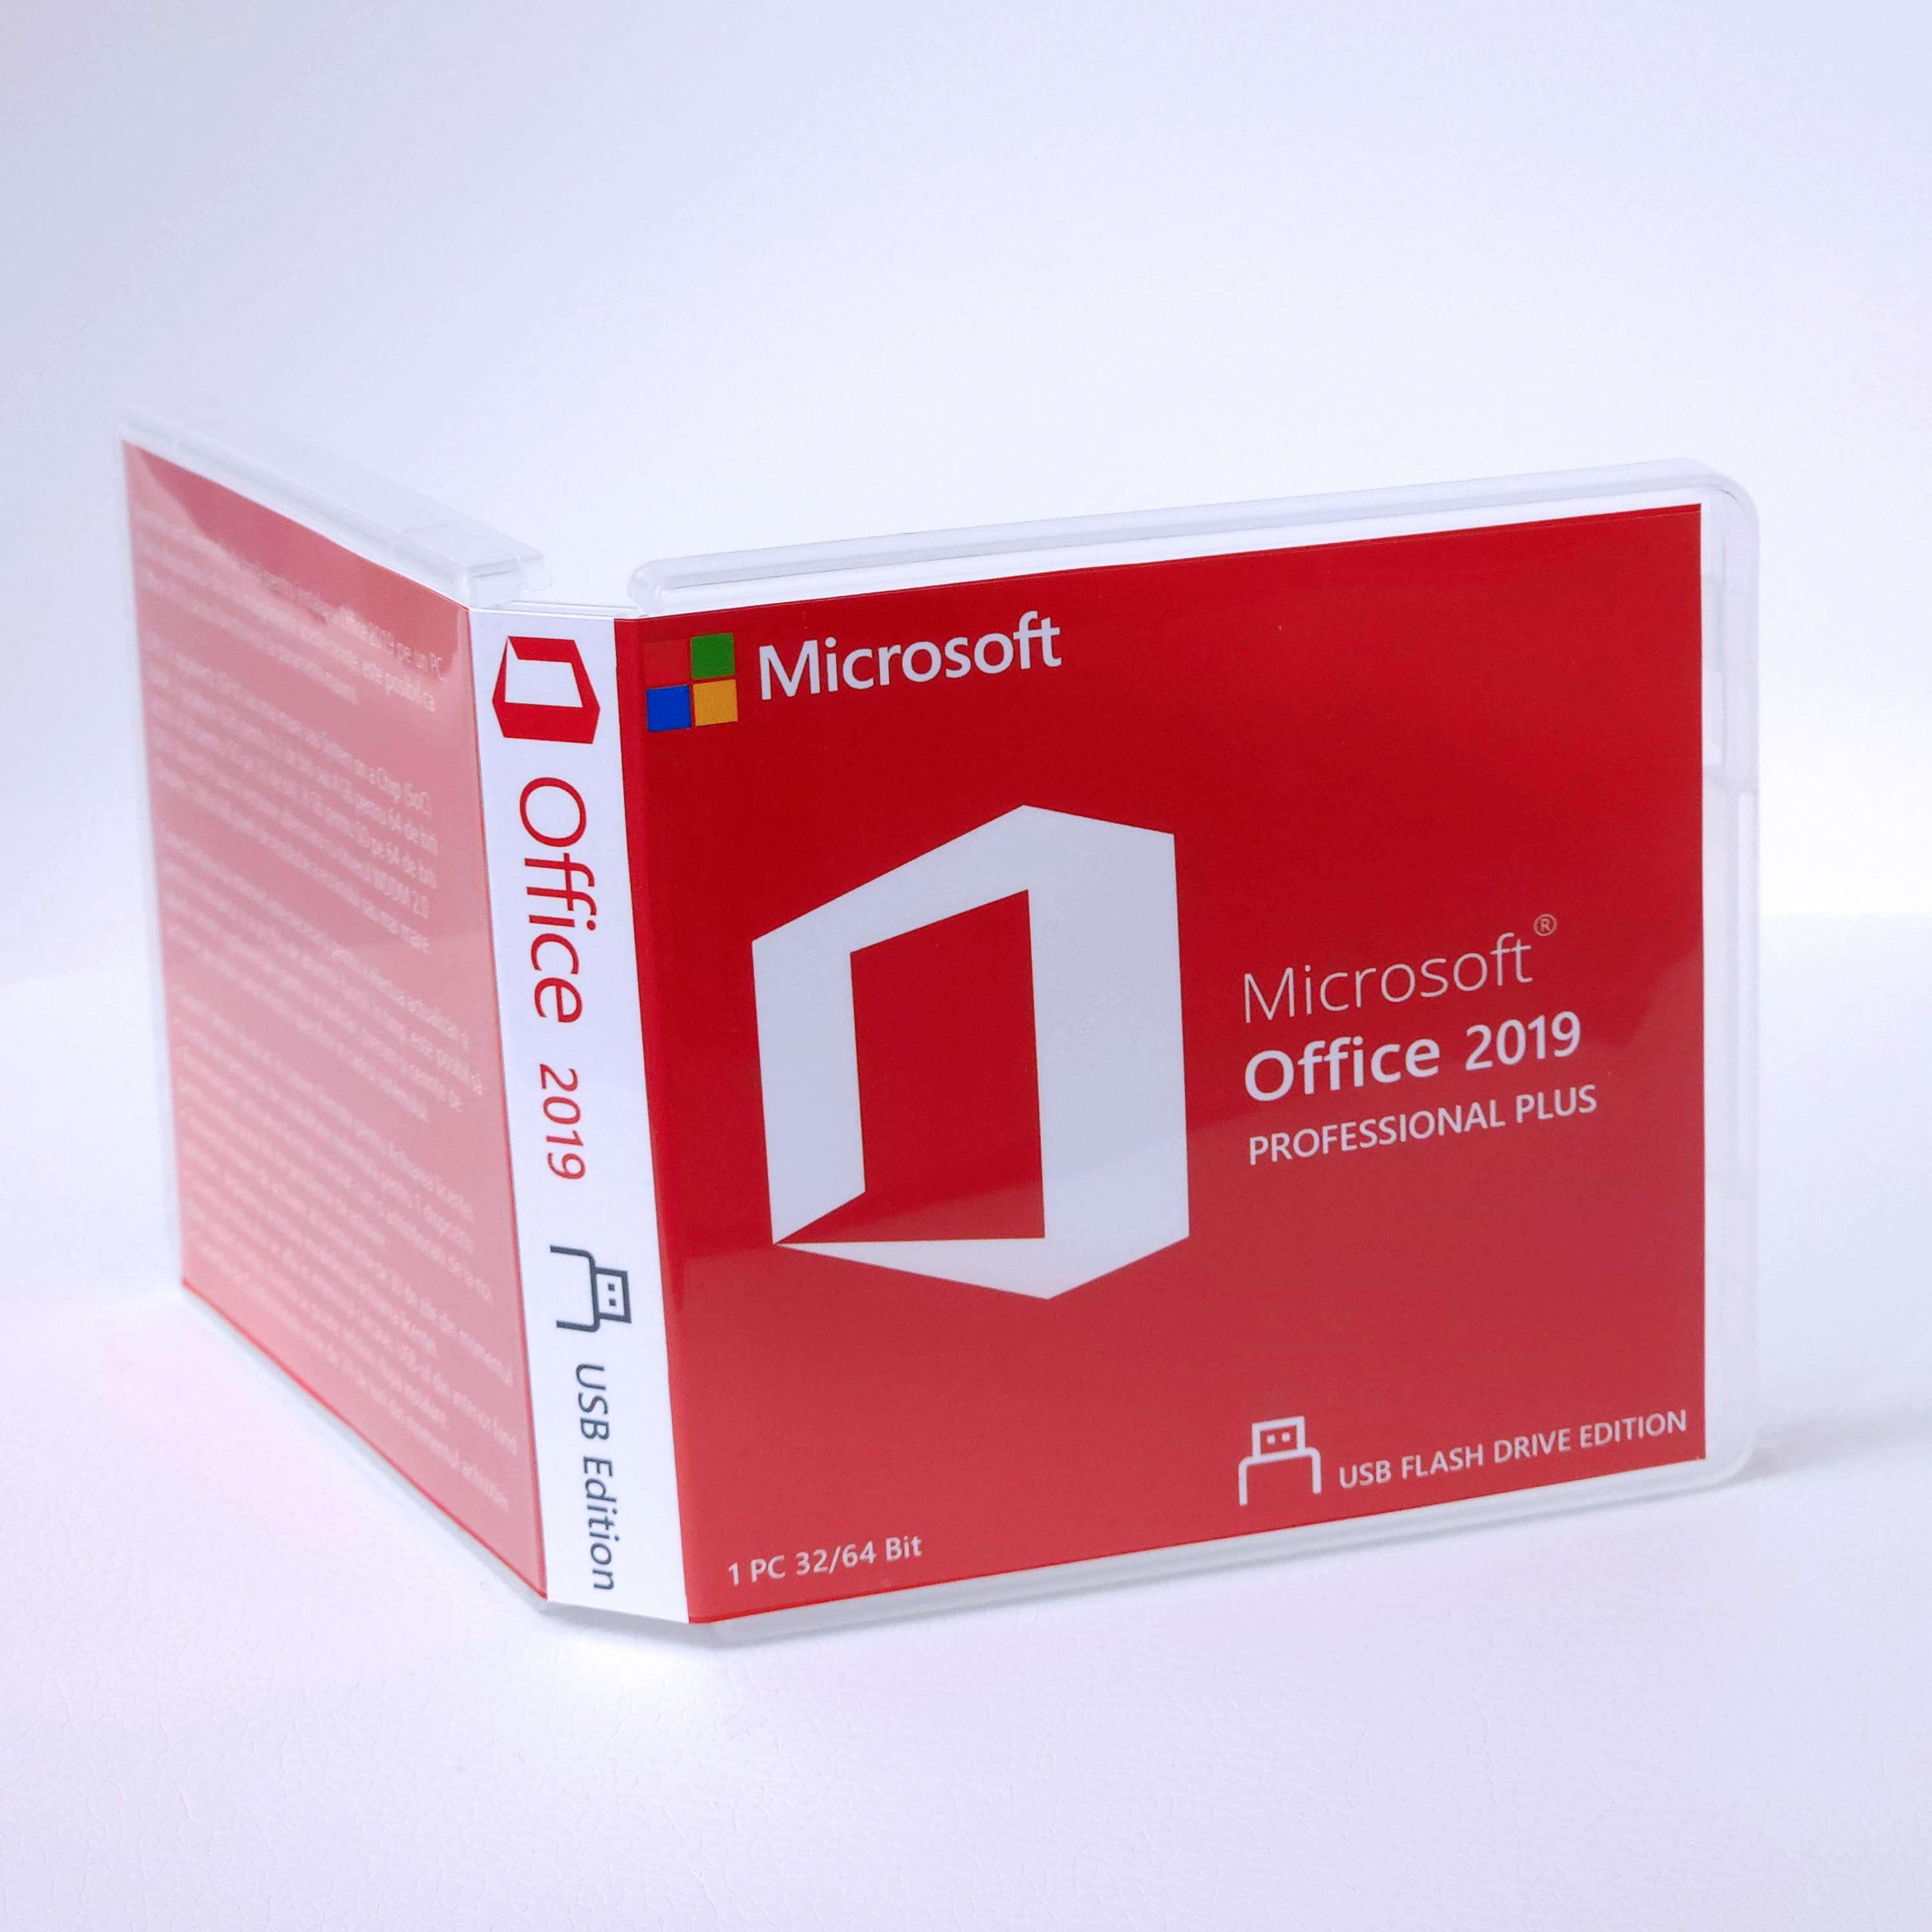 Cumpără acum Licenta Microsoft Office 2019 Professional Pro Plus - USB Edition - 32 si 64 BIT de pe Sellect.ro